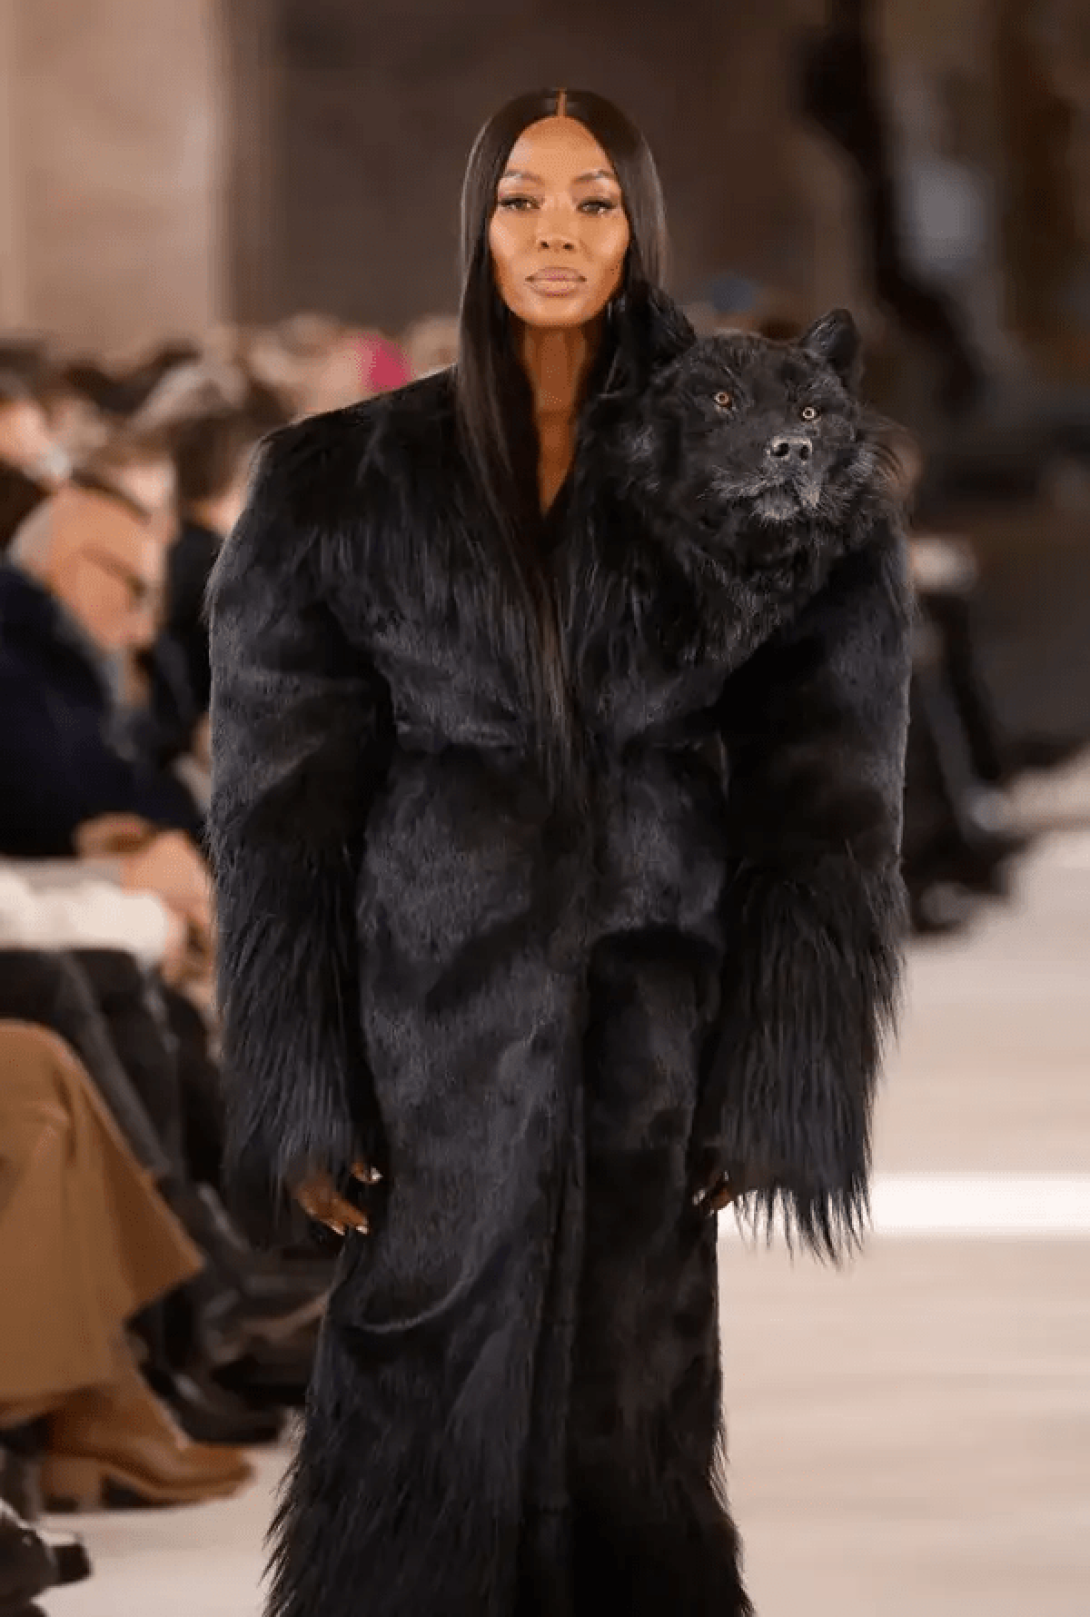 Naomi Campbell en la Semana de la Moda de París modelando con un vestido con una cabeza de lobo negra.